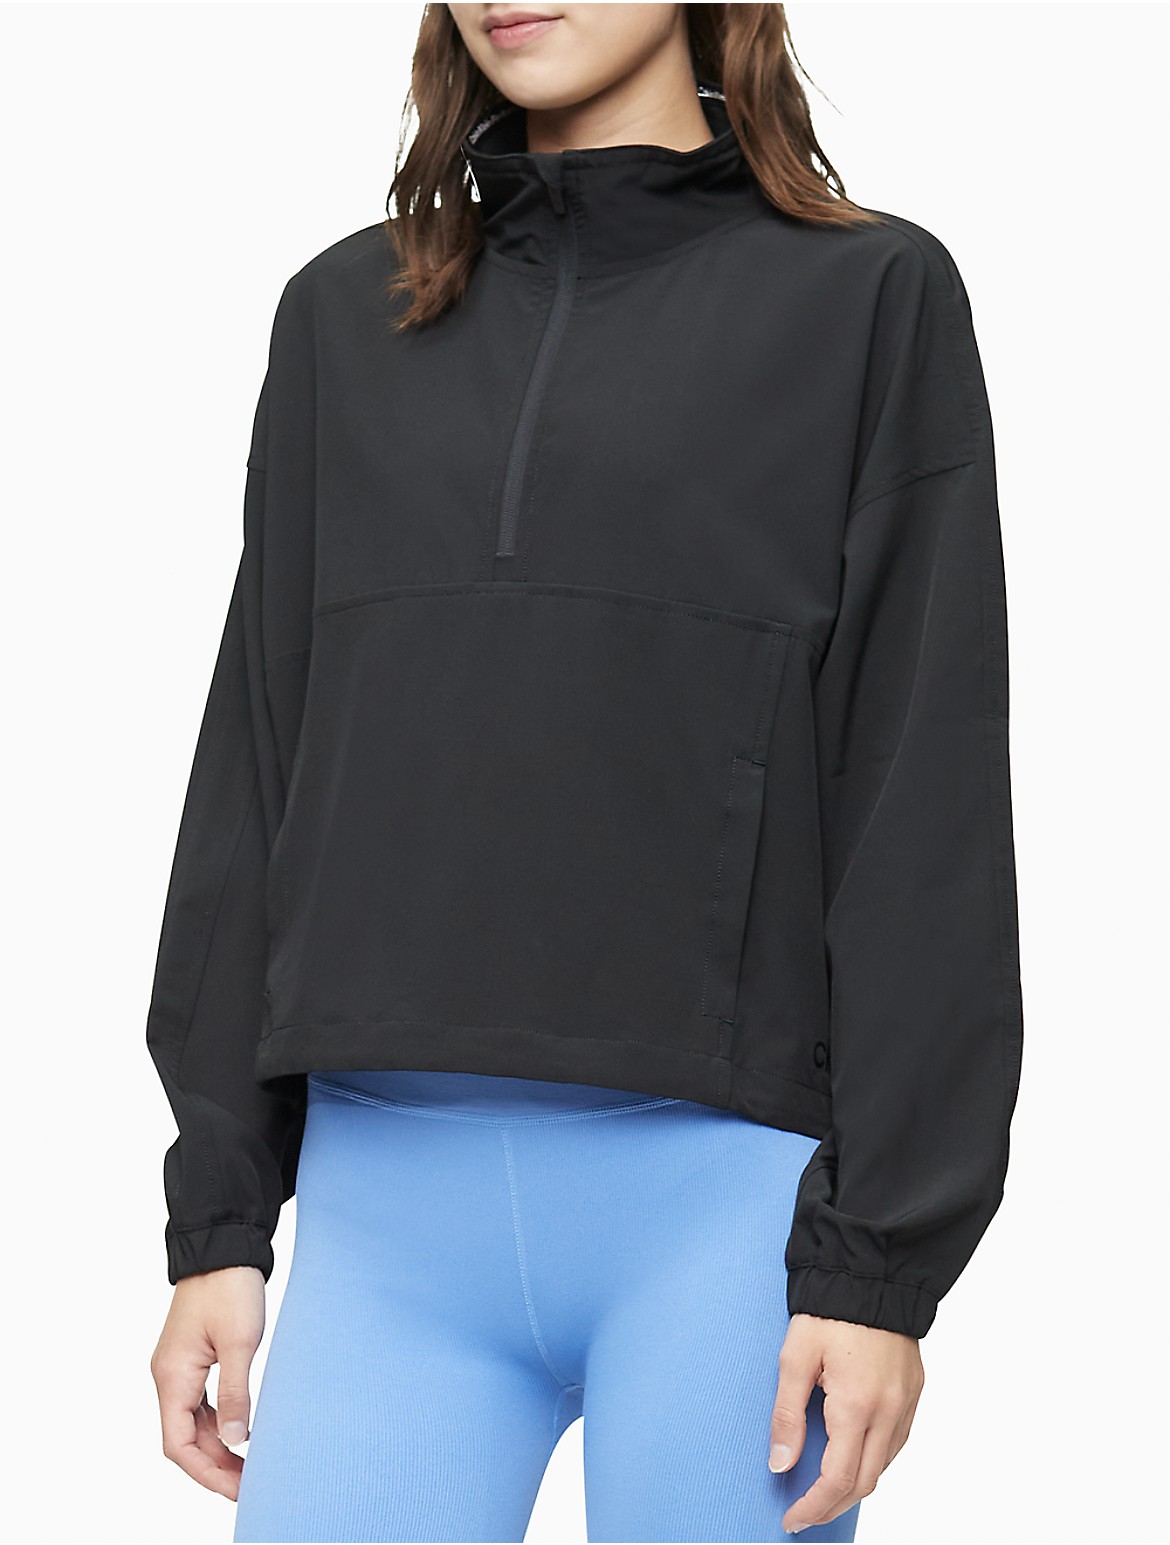 Calvin Klein Women's Performance 1/2 Zip Pullover Jacket - Black - XL